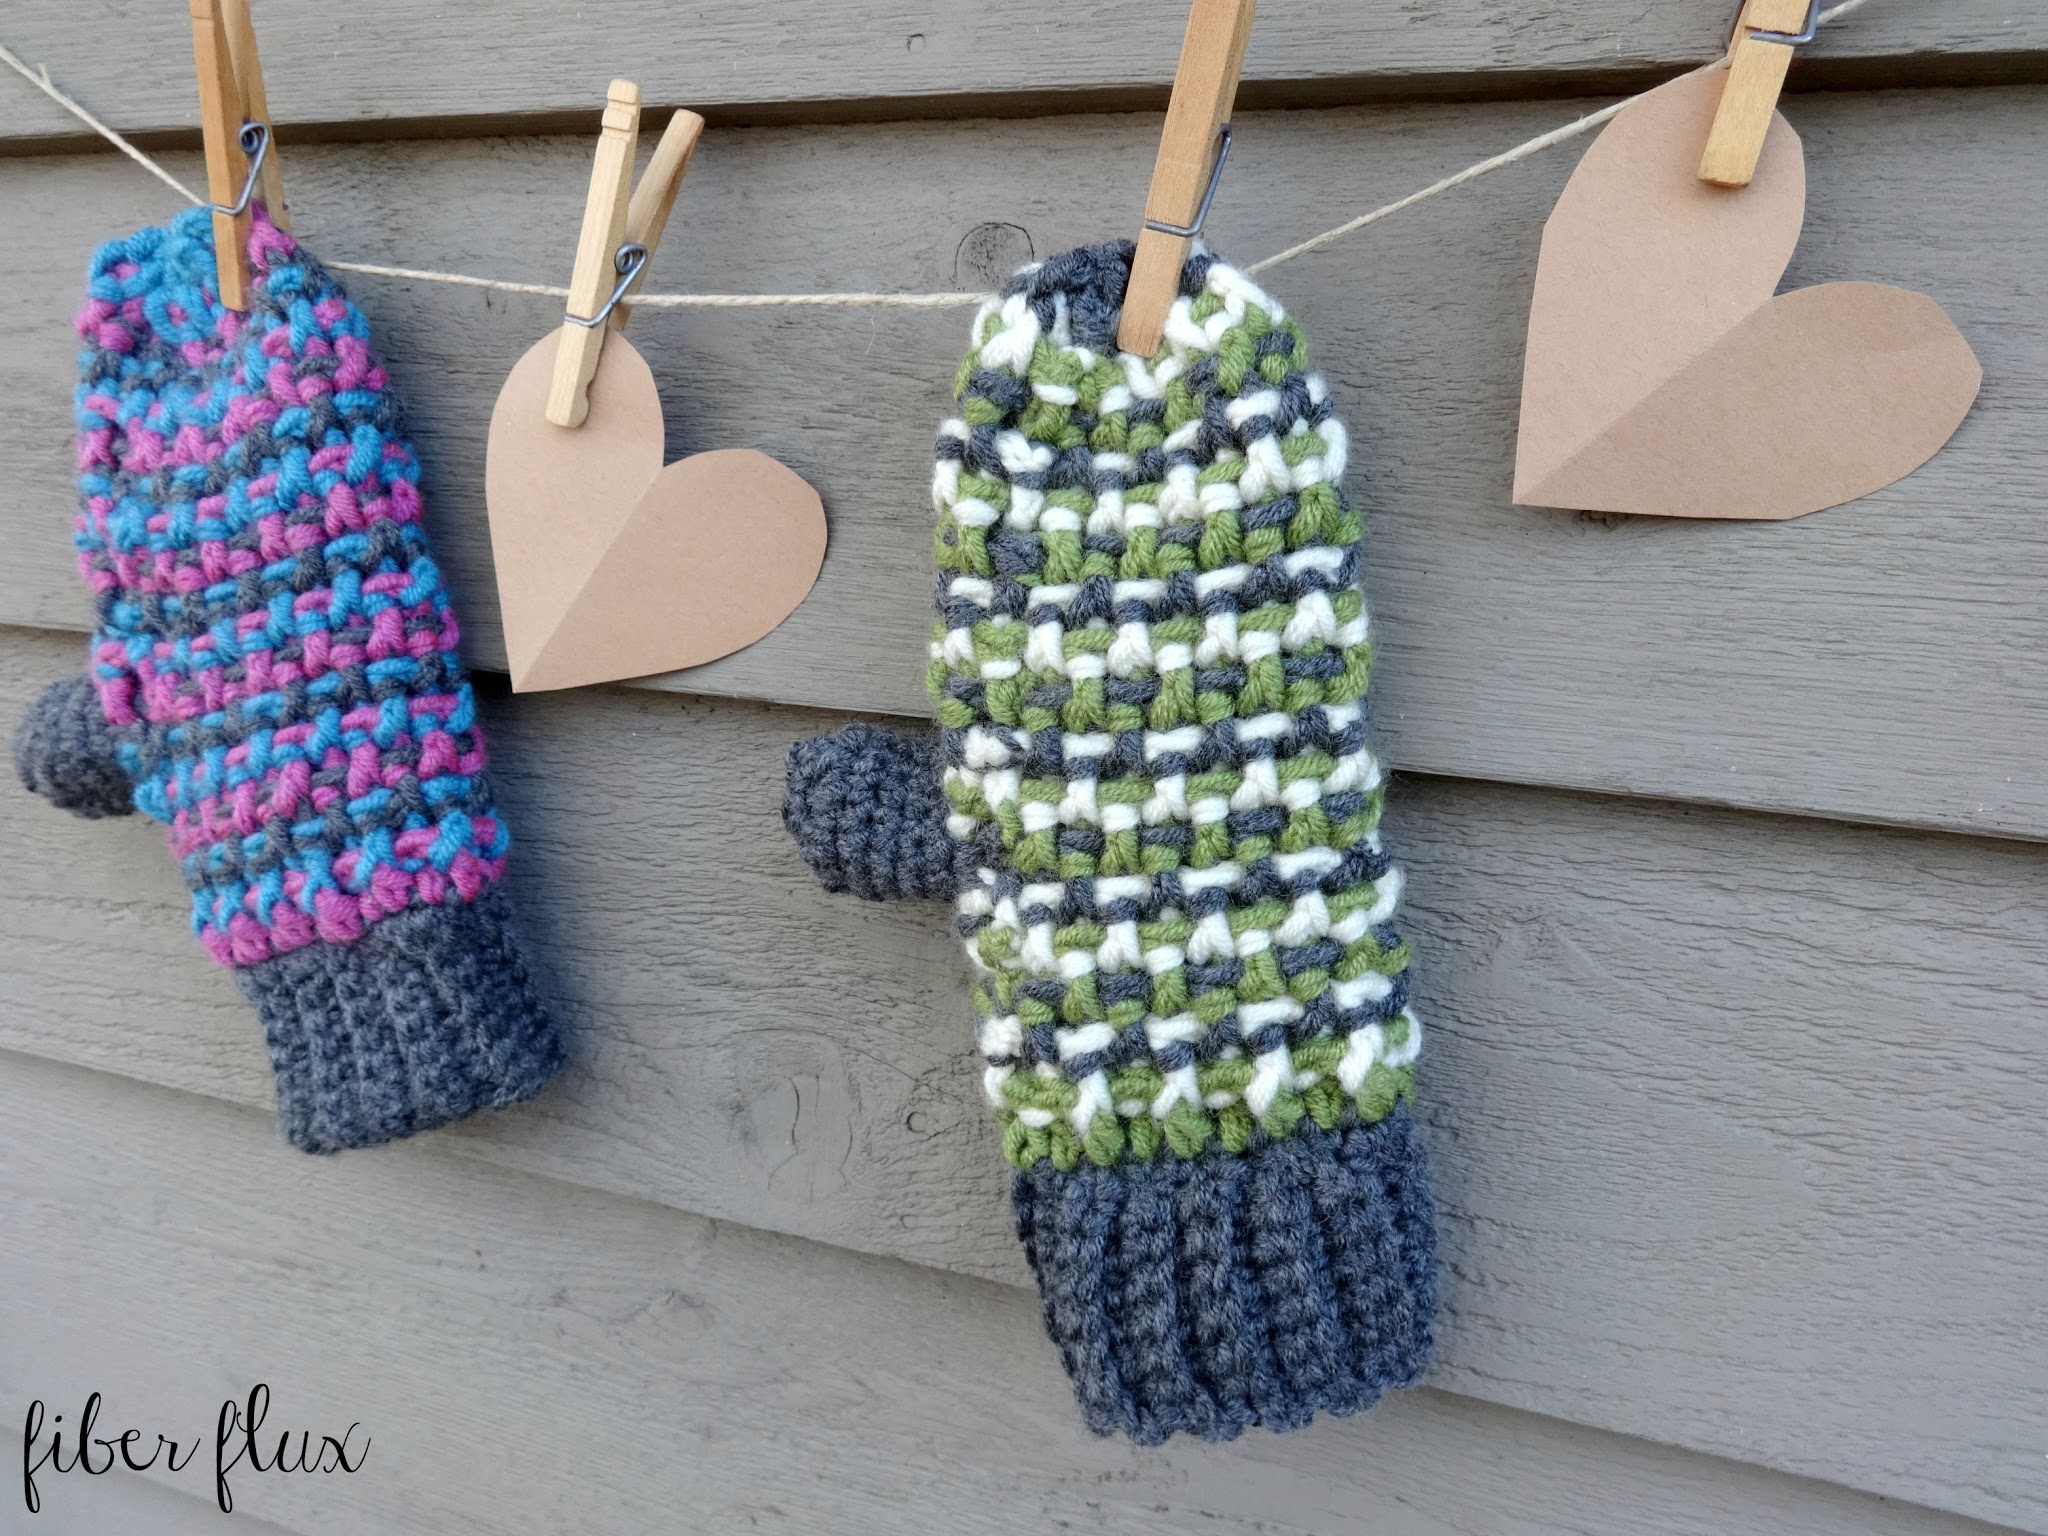 Sleigh Ride Crochet Mittens